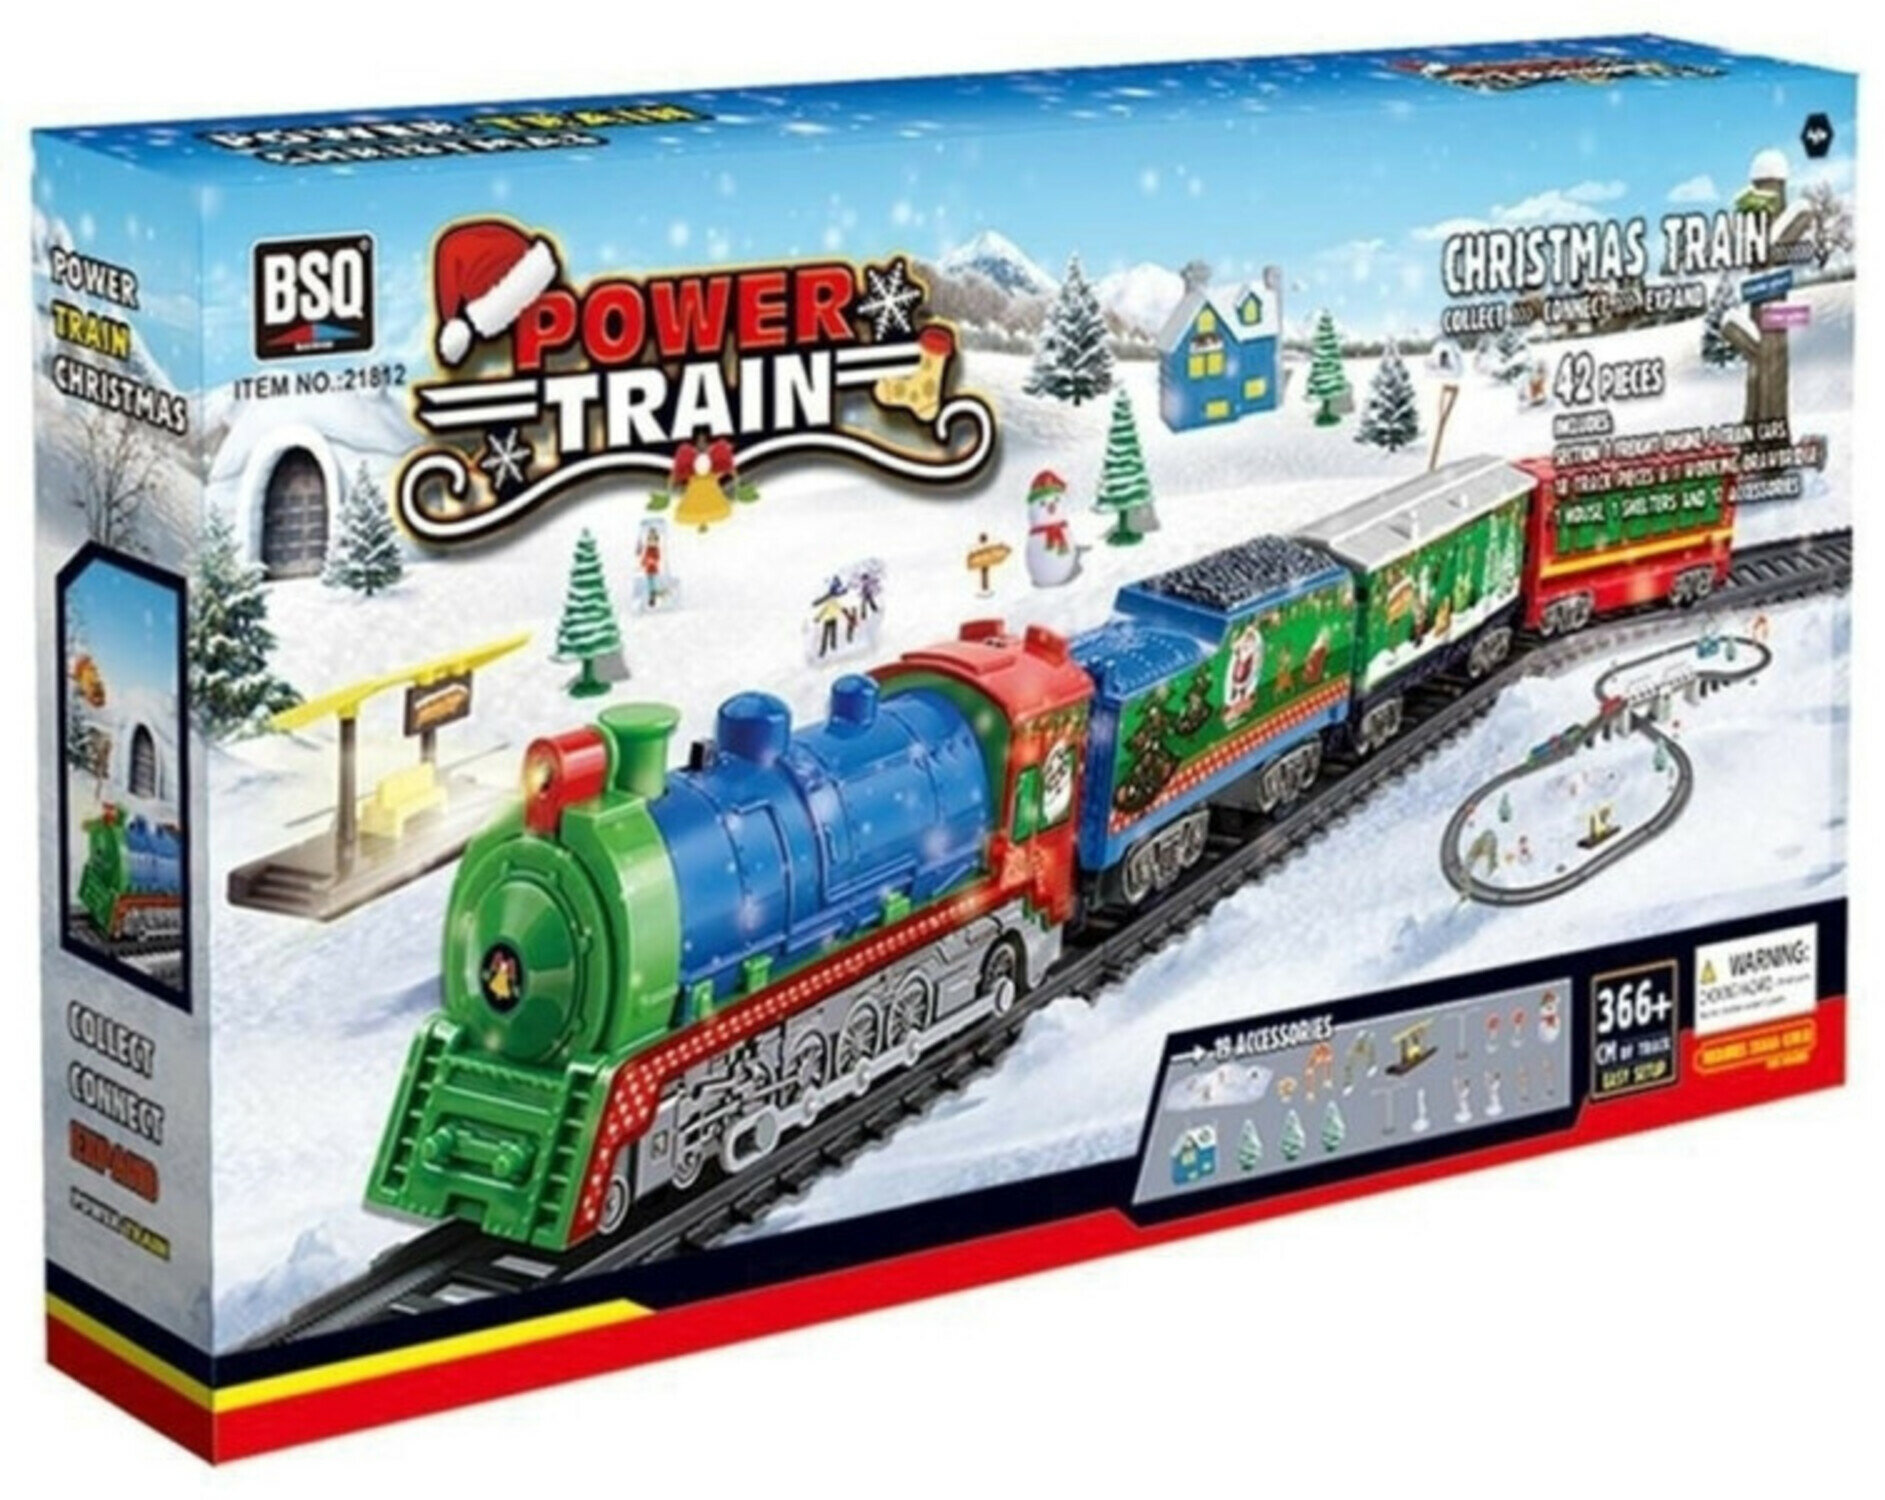 Железная дорога детская Новогодний поезд, 4 состава, 366 см длина трассы, с подсветкой, с фигурками - BSQ-21812